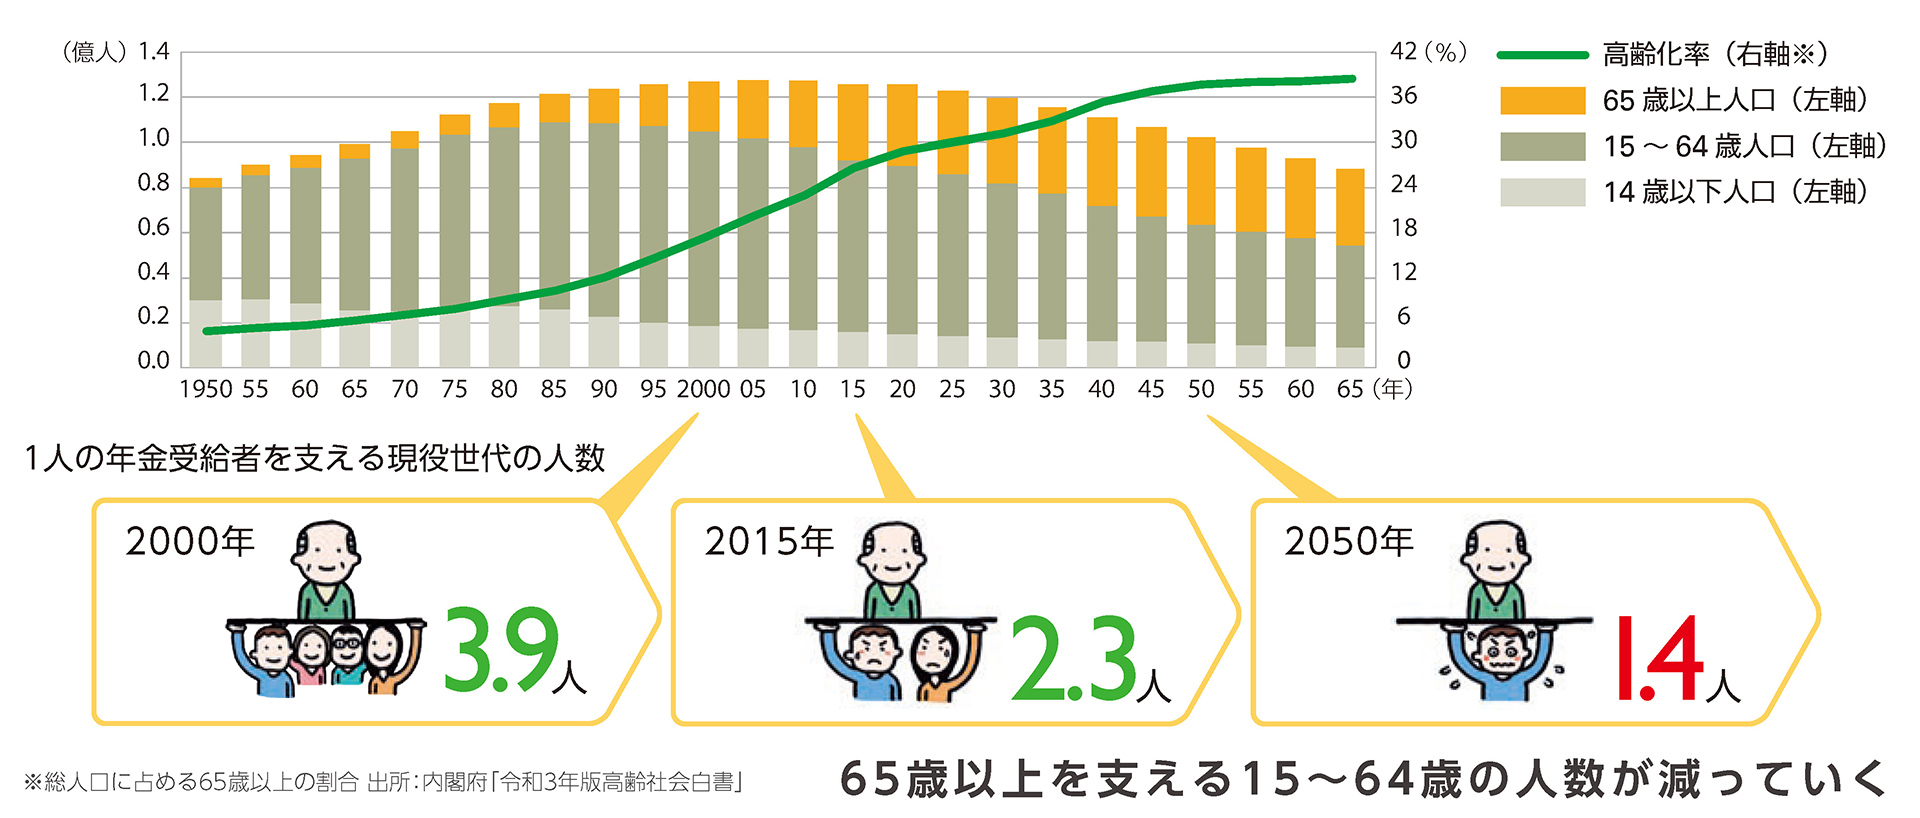 少子高齢化と1人の年金樹集車を支える現役世代の人数を示した図